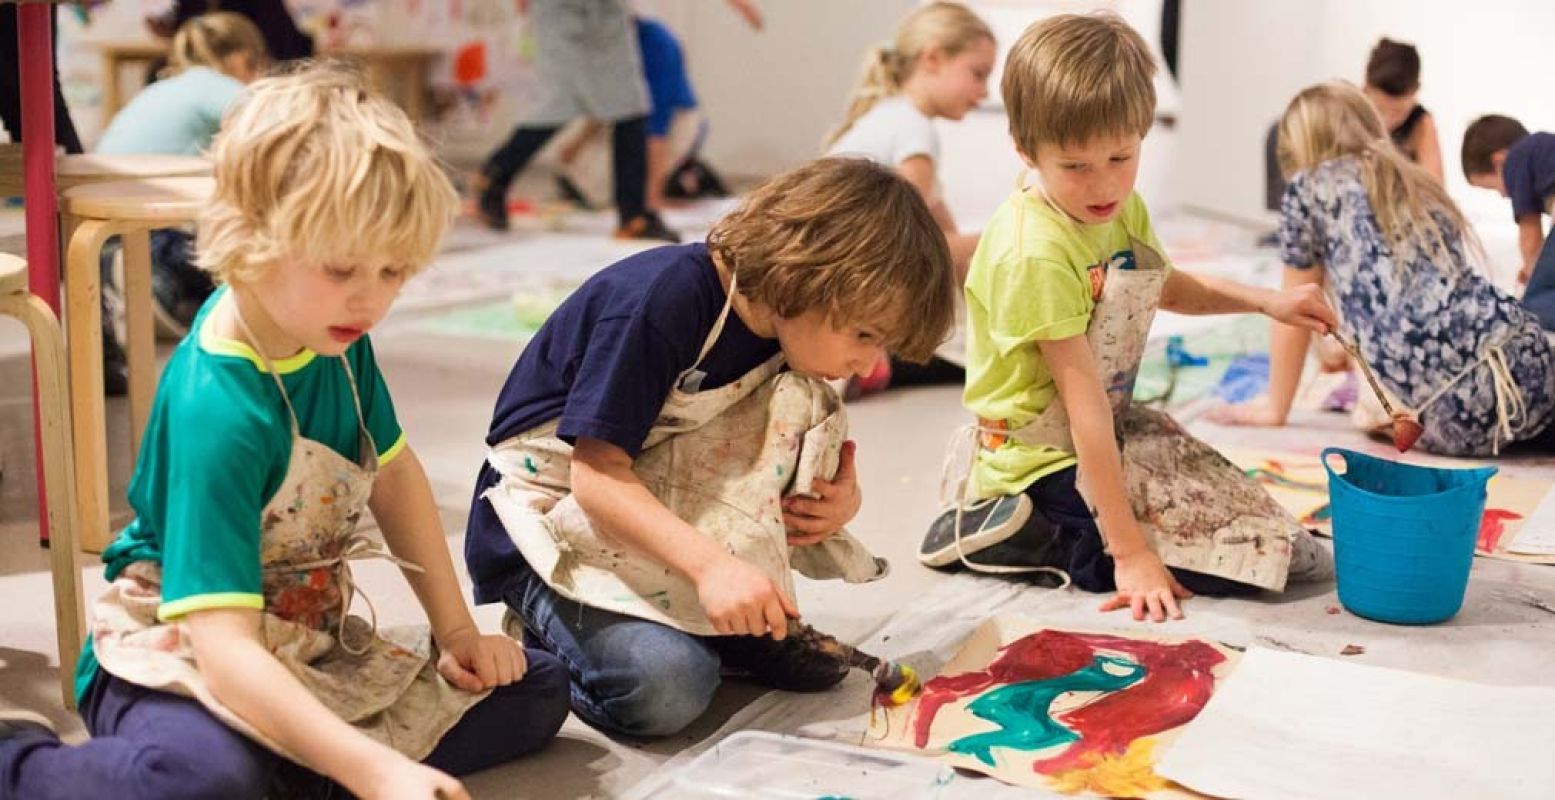 Het Cobra Museum organiseert Zomerse Zondag Workshops voor kinderen. Foto: Cobra Museum